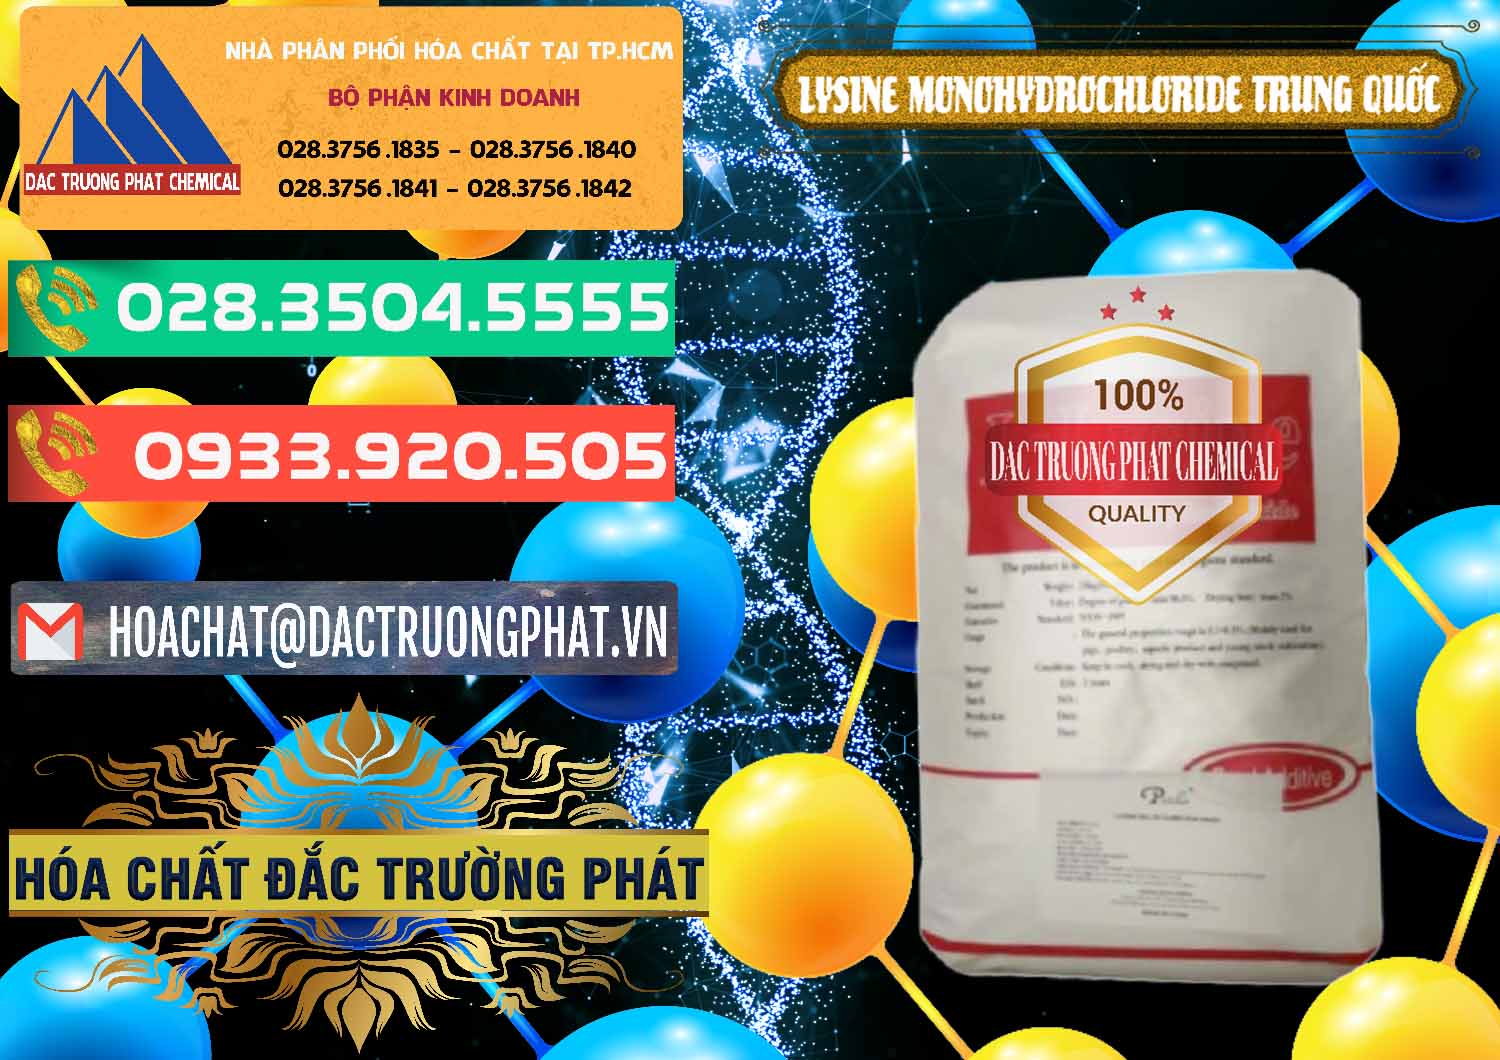 Cty chuyên bán _ cung cấp L-Lysine Monohydrochloride Feed Grade Trung Quốc China - 0454 - Nơi chuyên nhập khẩu - cung cấp hóa chất tại TP.HCM - congtyhoachat.com.vn